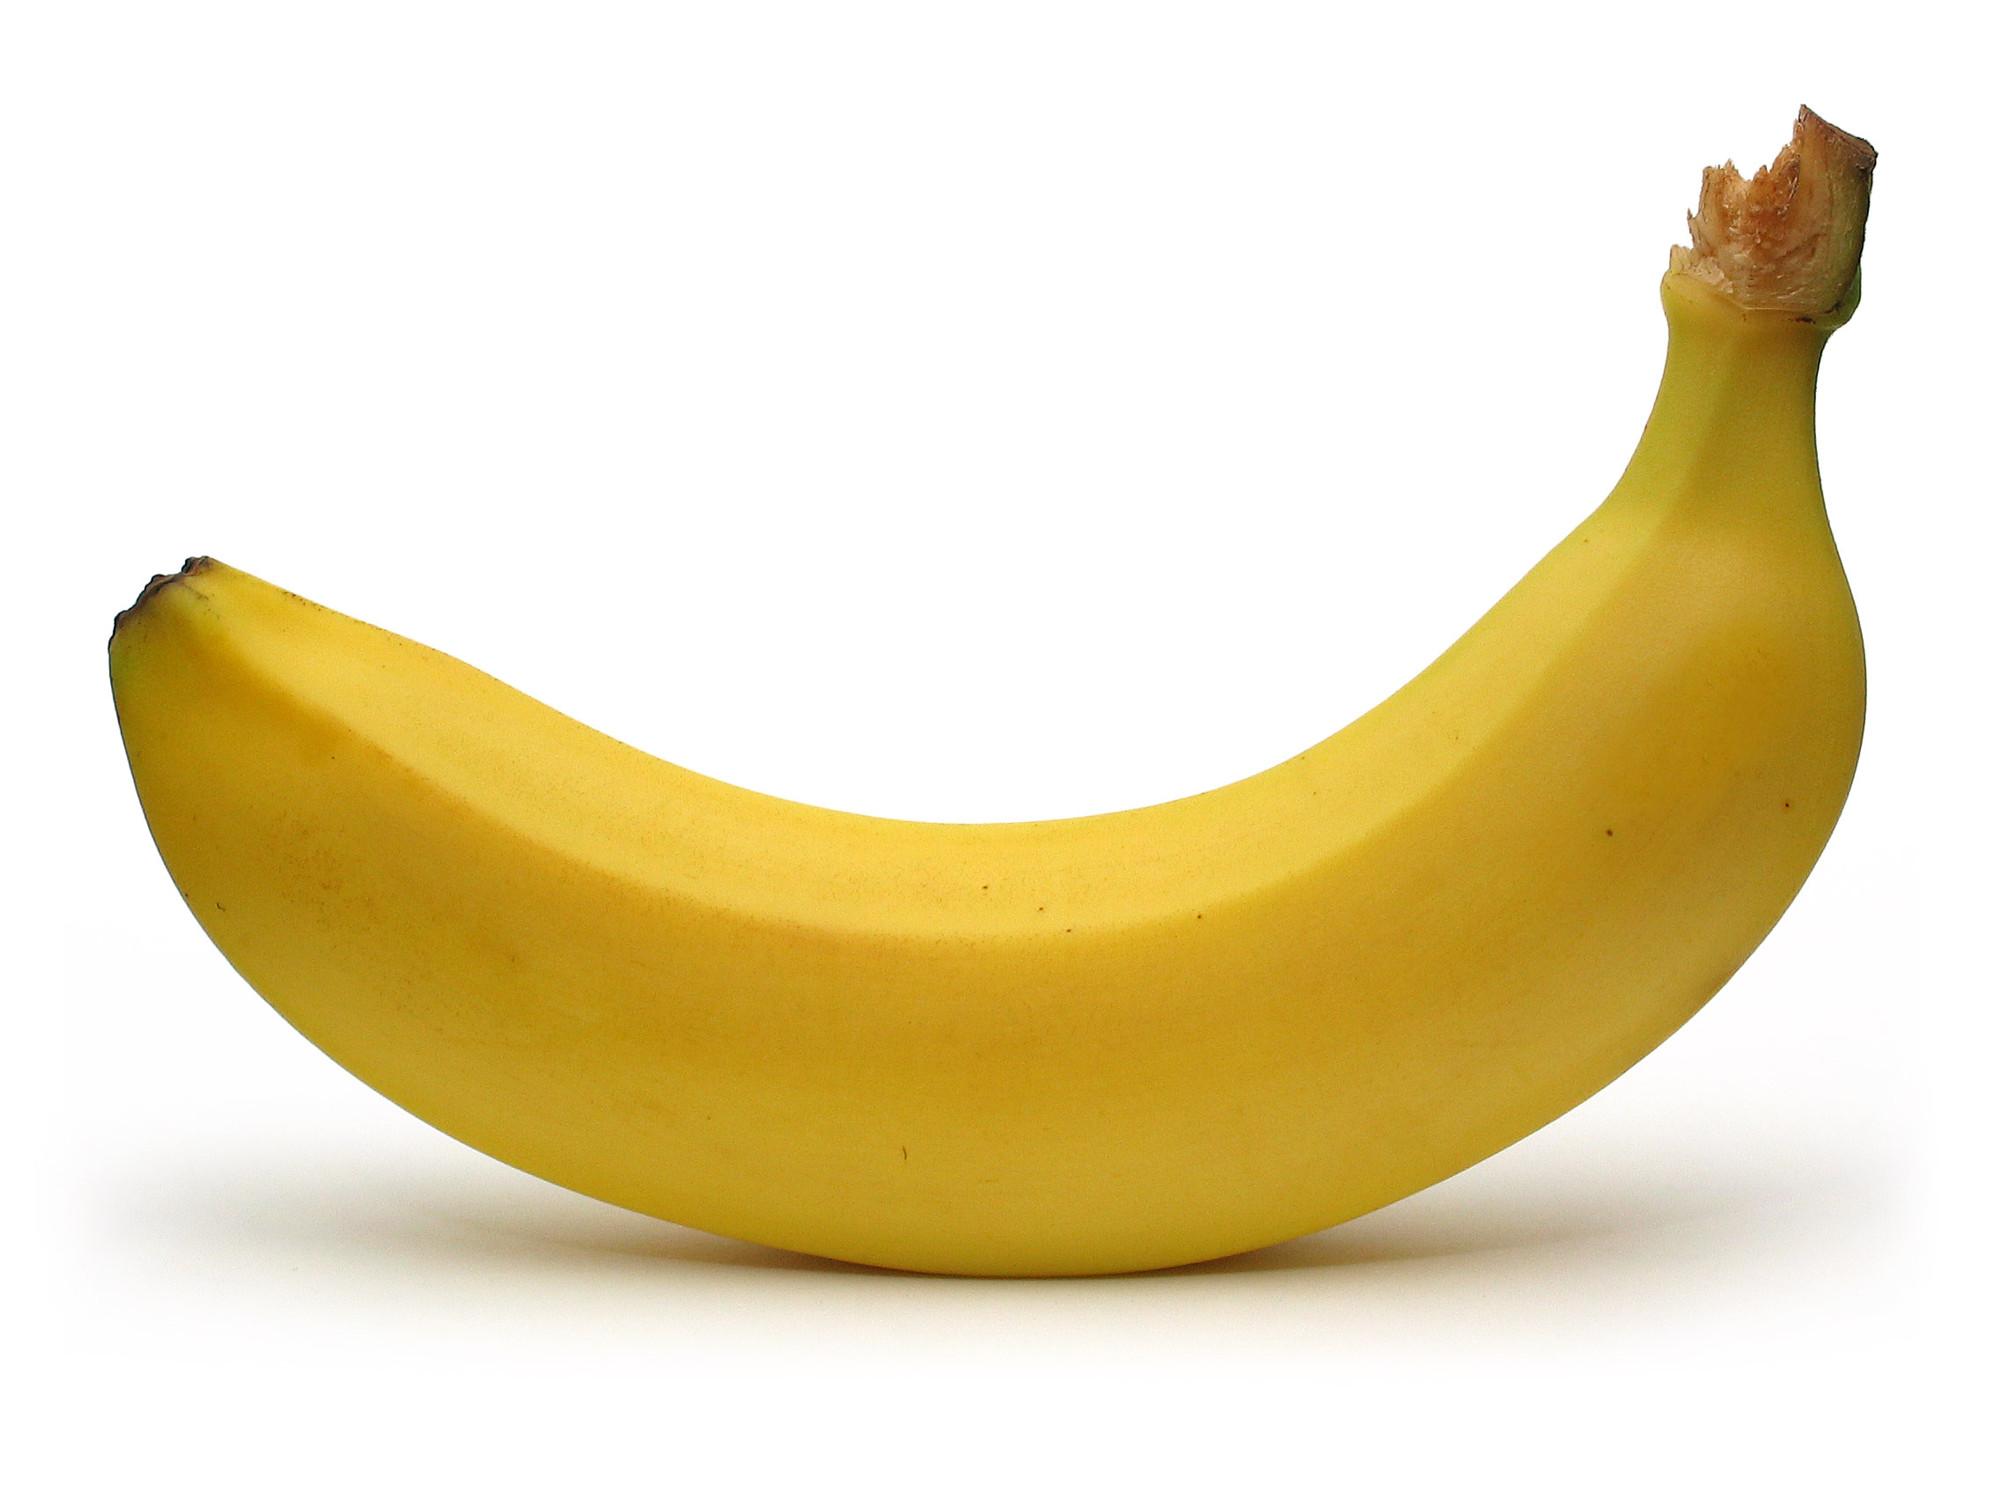 The Banana Stand